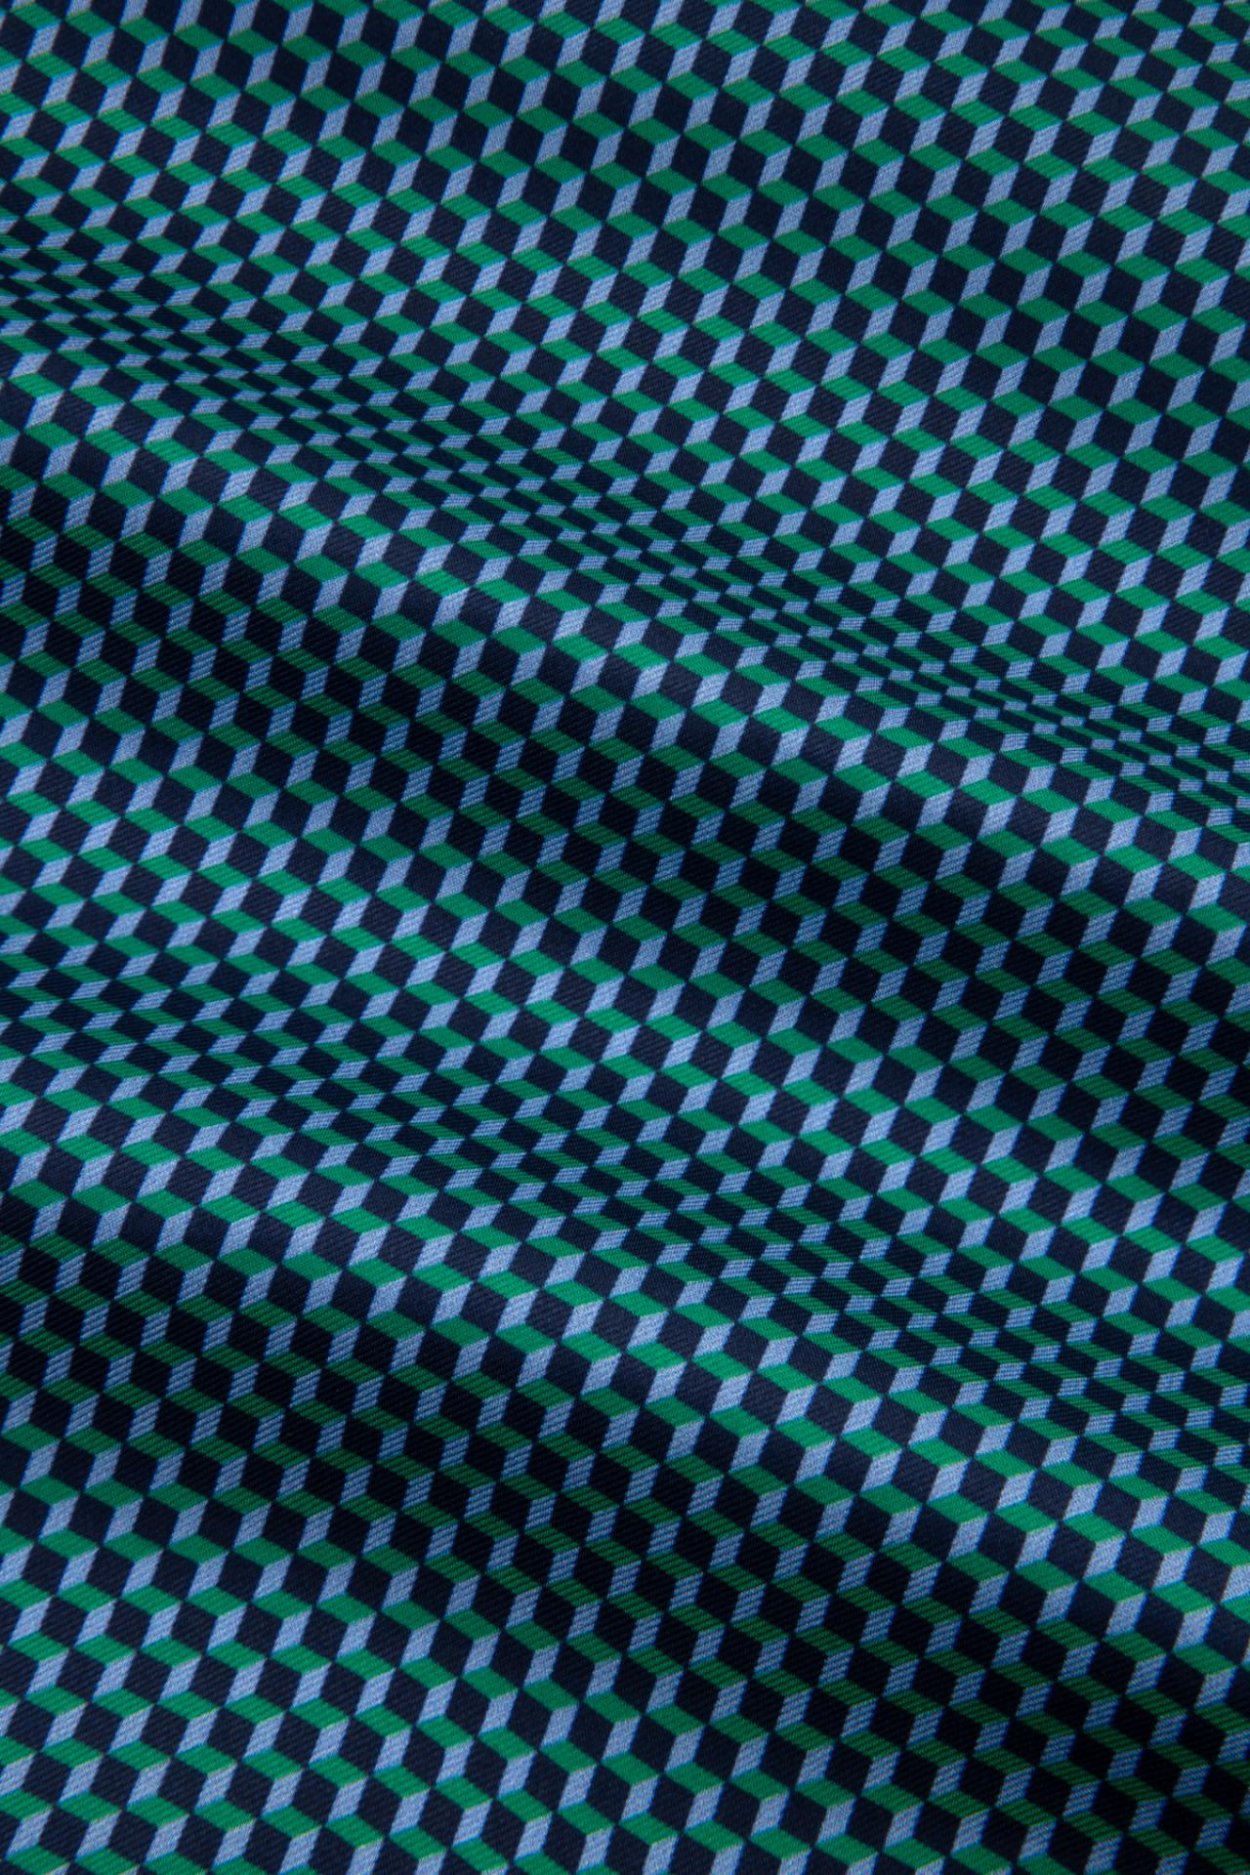 Modrozelený hedvábný kapesníček se vzorem